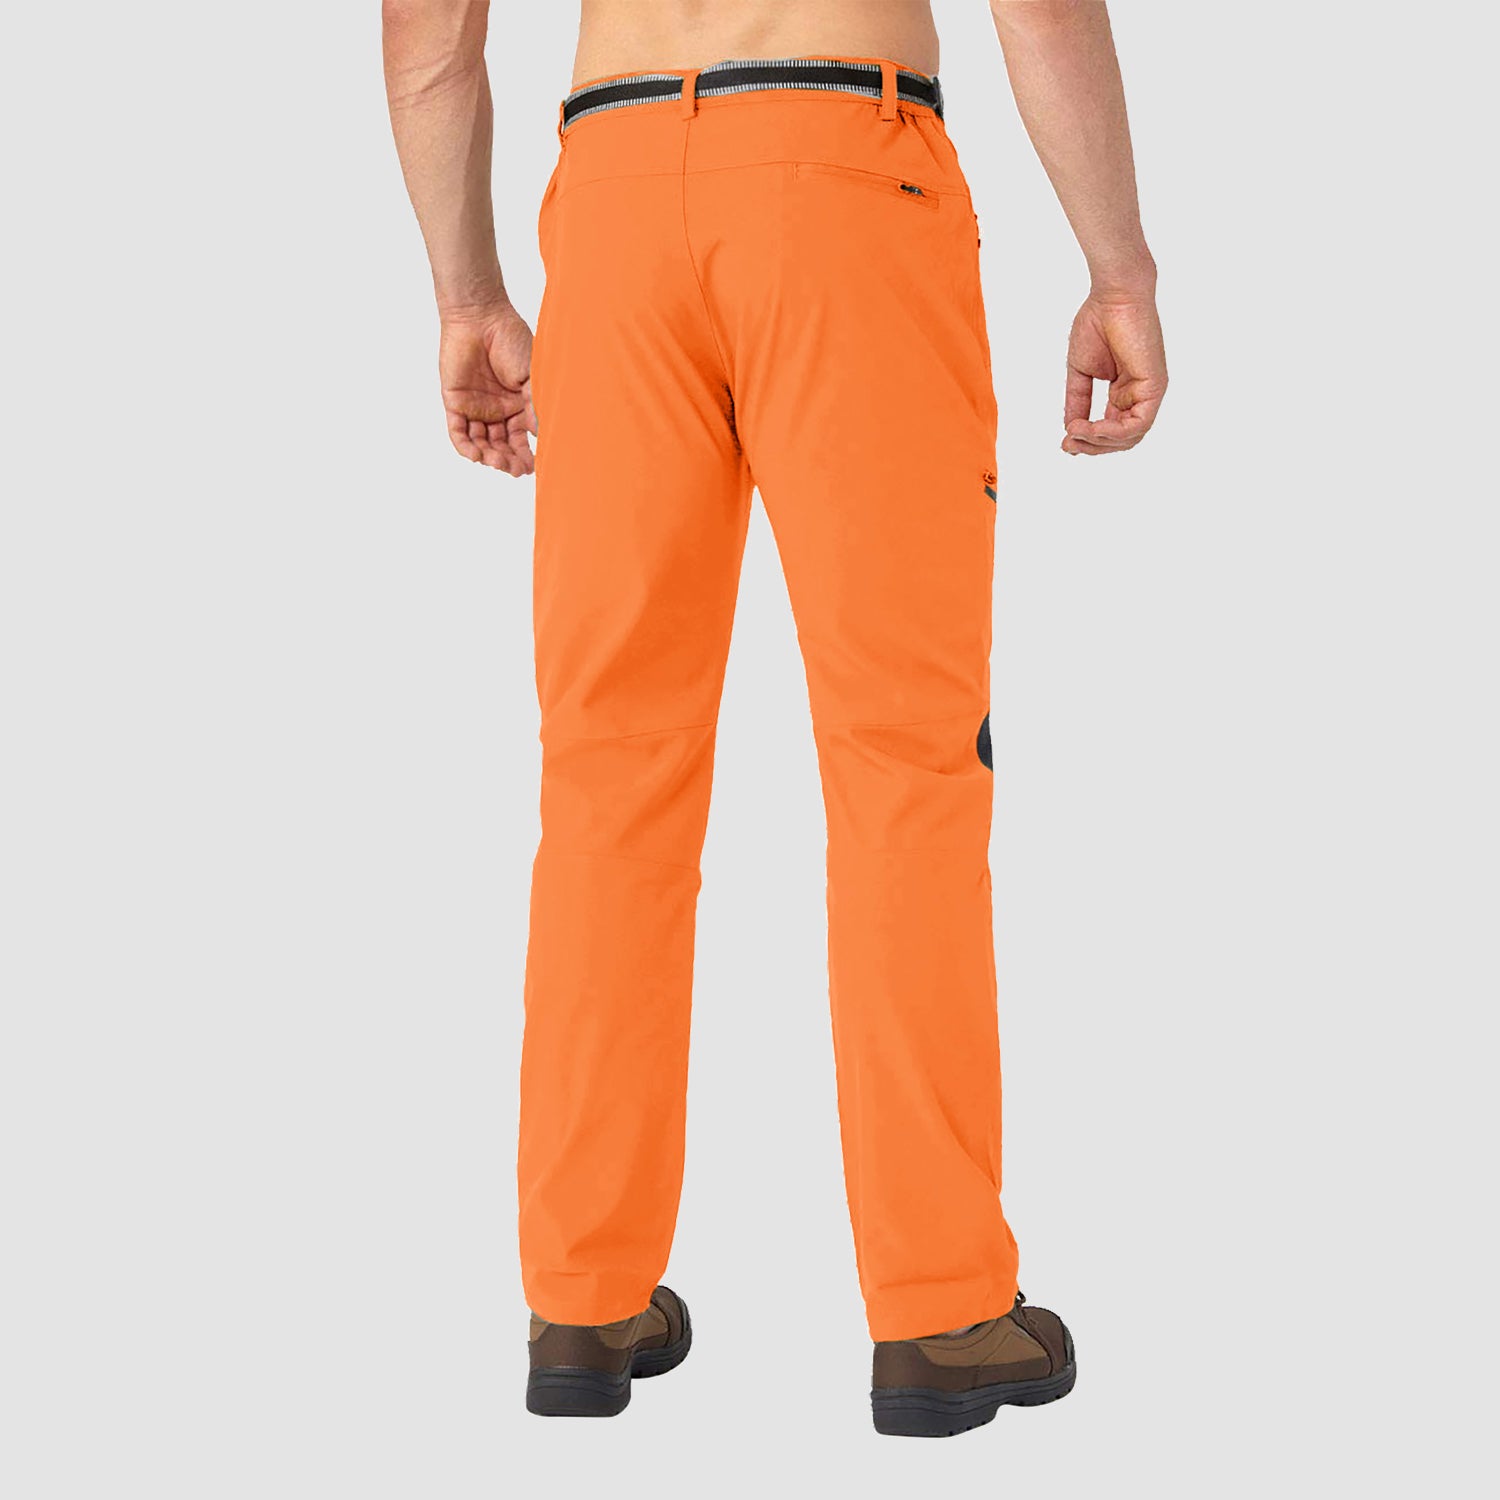 Men's Winter Pants Fleece Lined Ski Snow Pants Water Resistant with 4 Zip Pockets